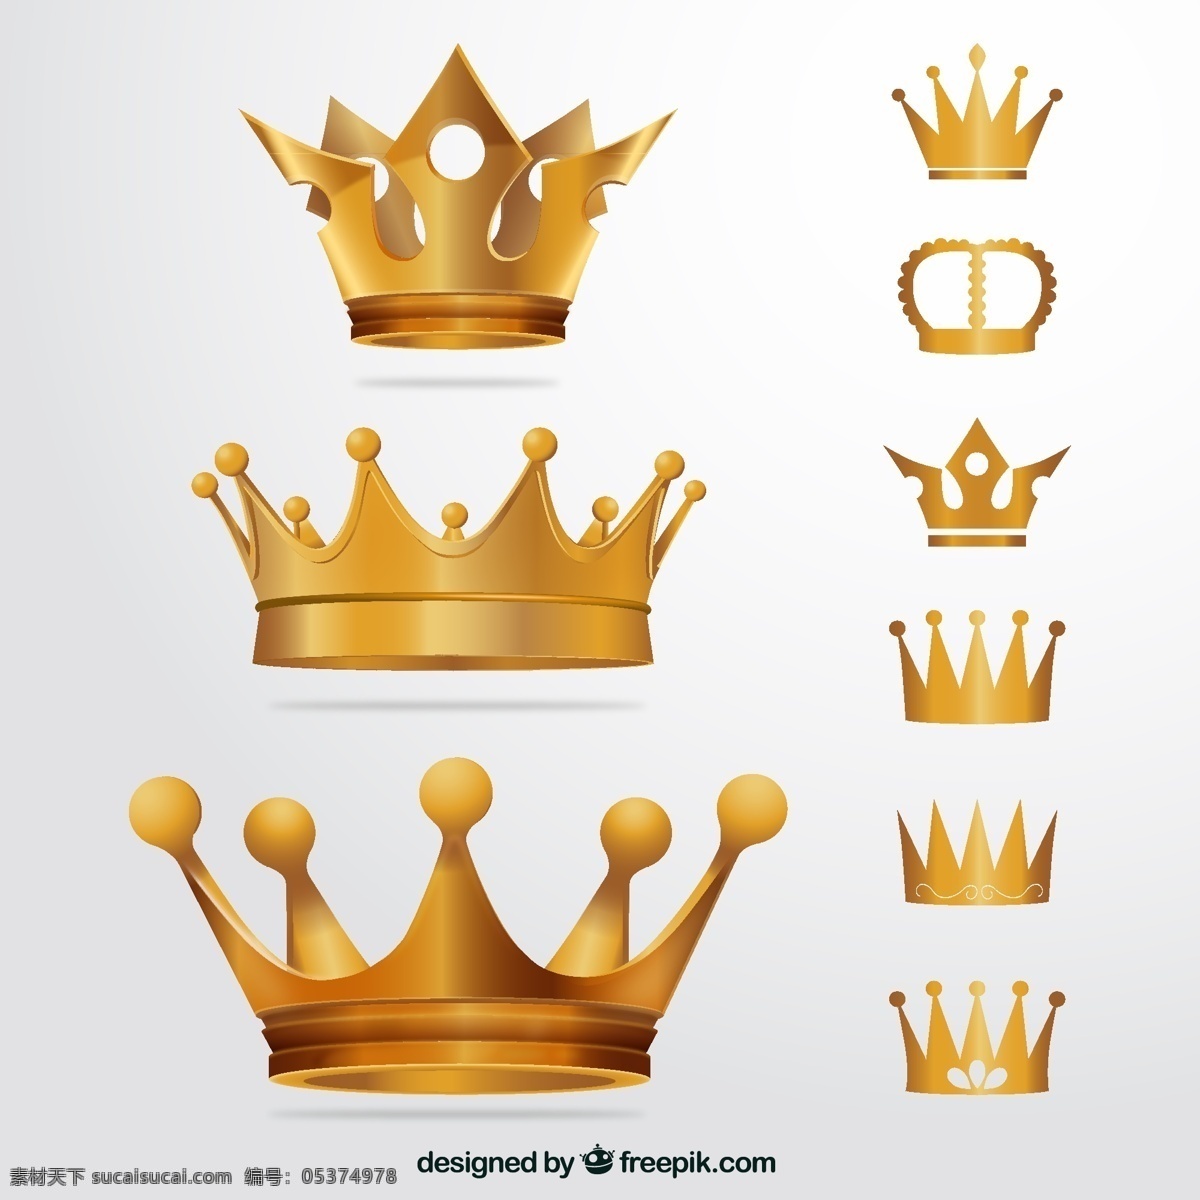 成功 公主 国王 皇冠 皇家 皇室 奖 政府 金 矢量趣多多 标志图标 其他图标